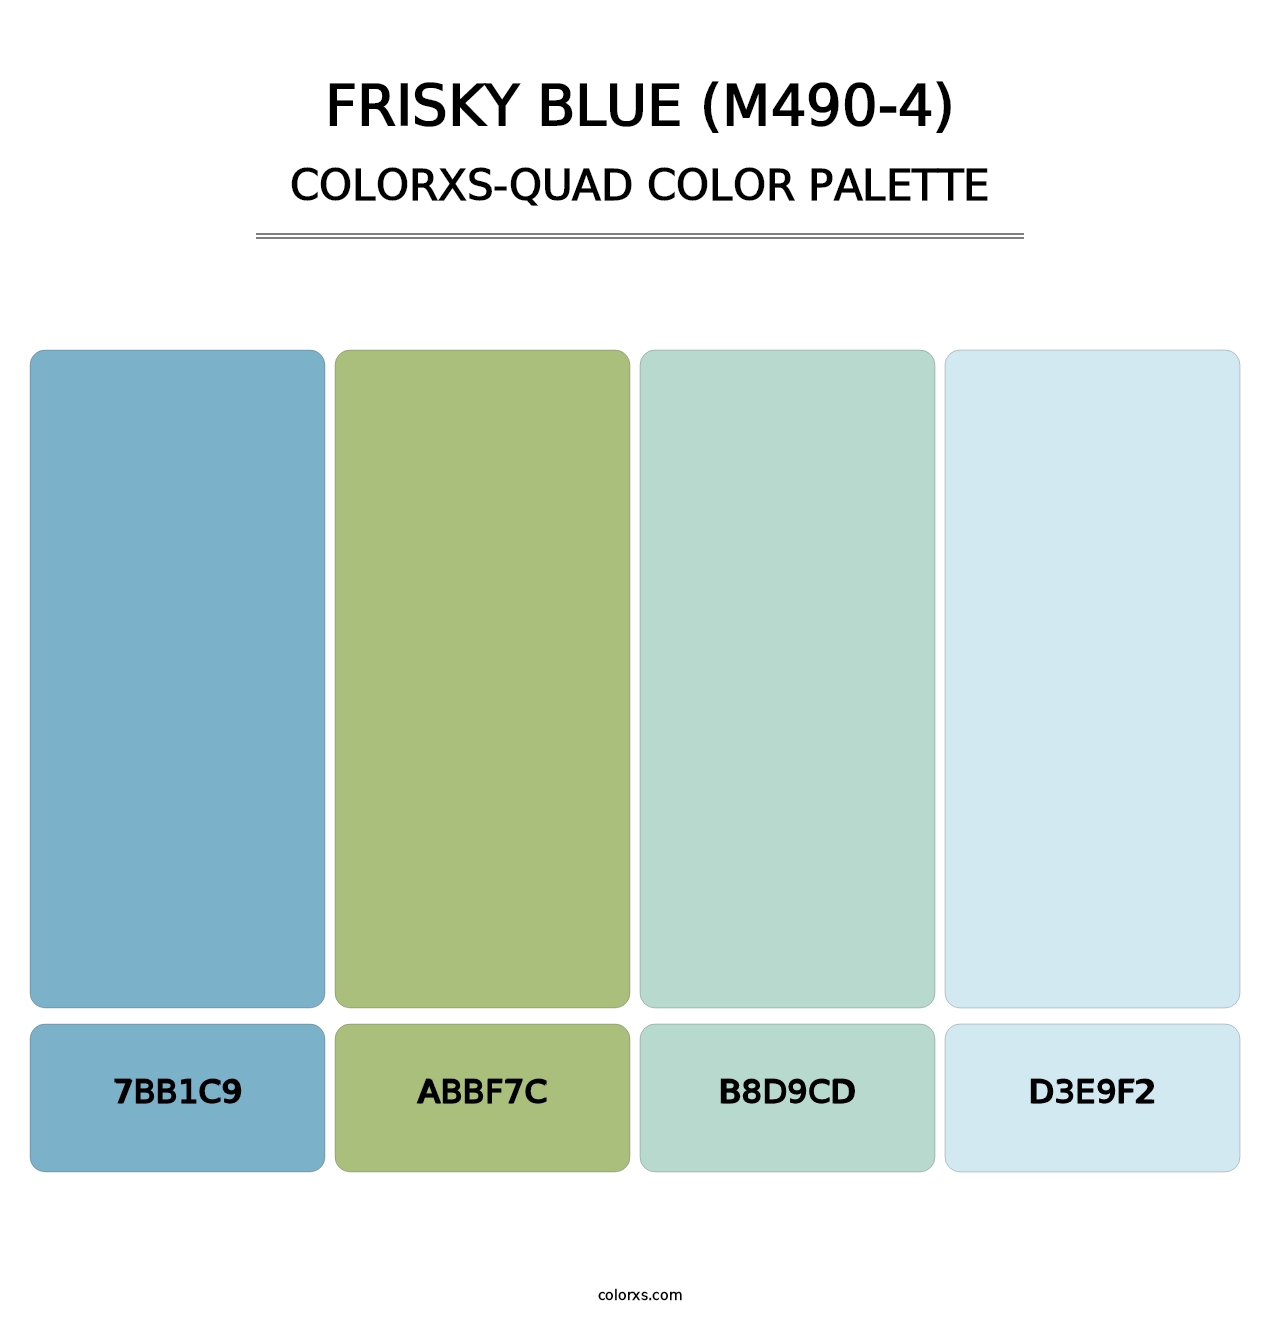 Frisky Blue (M490-4) - Colorxs Quad Palette